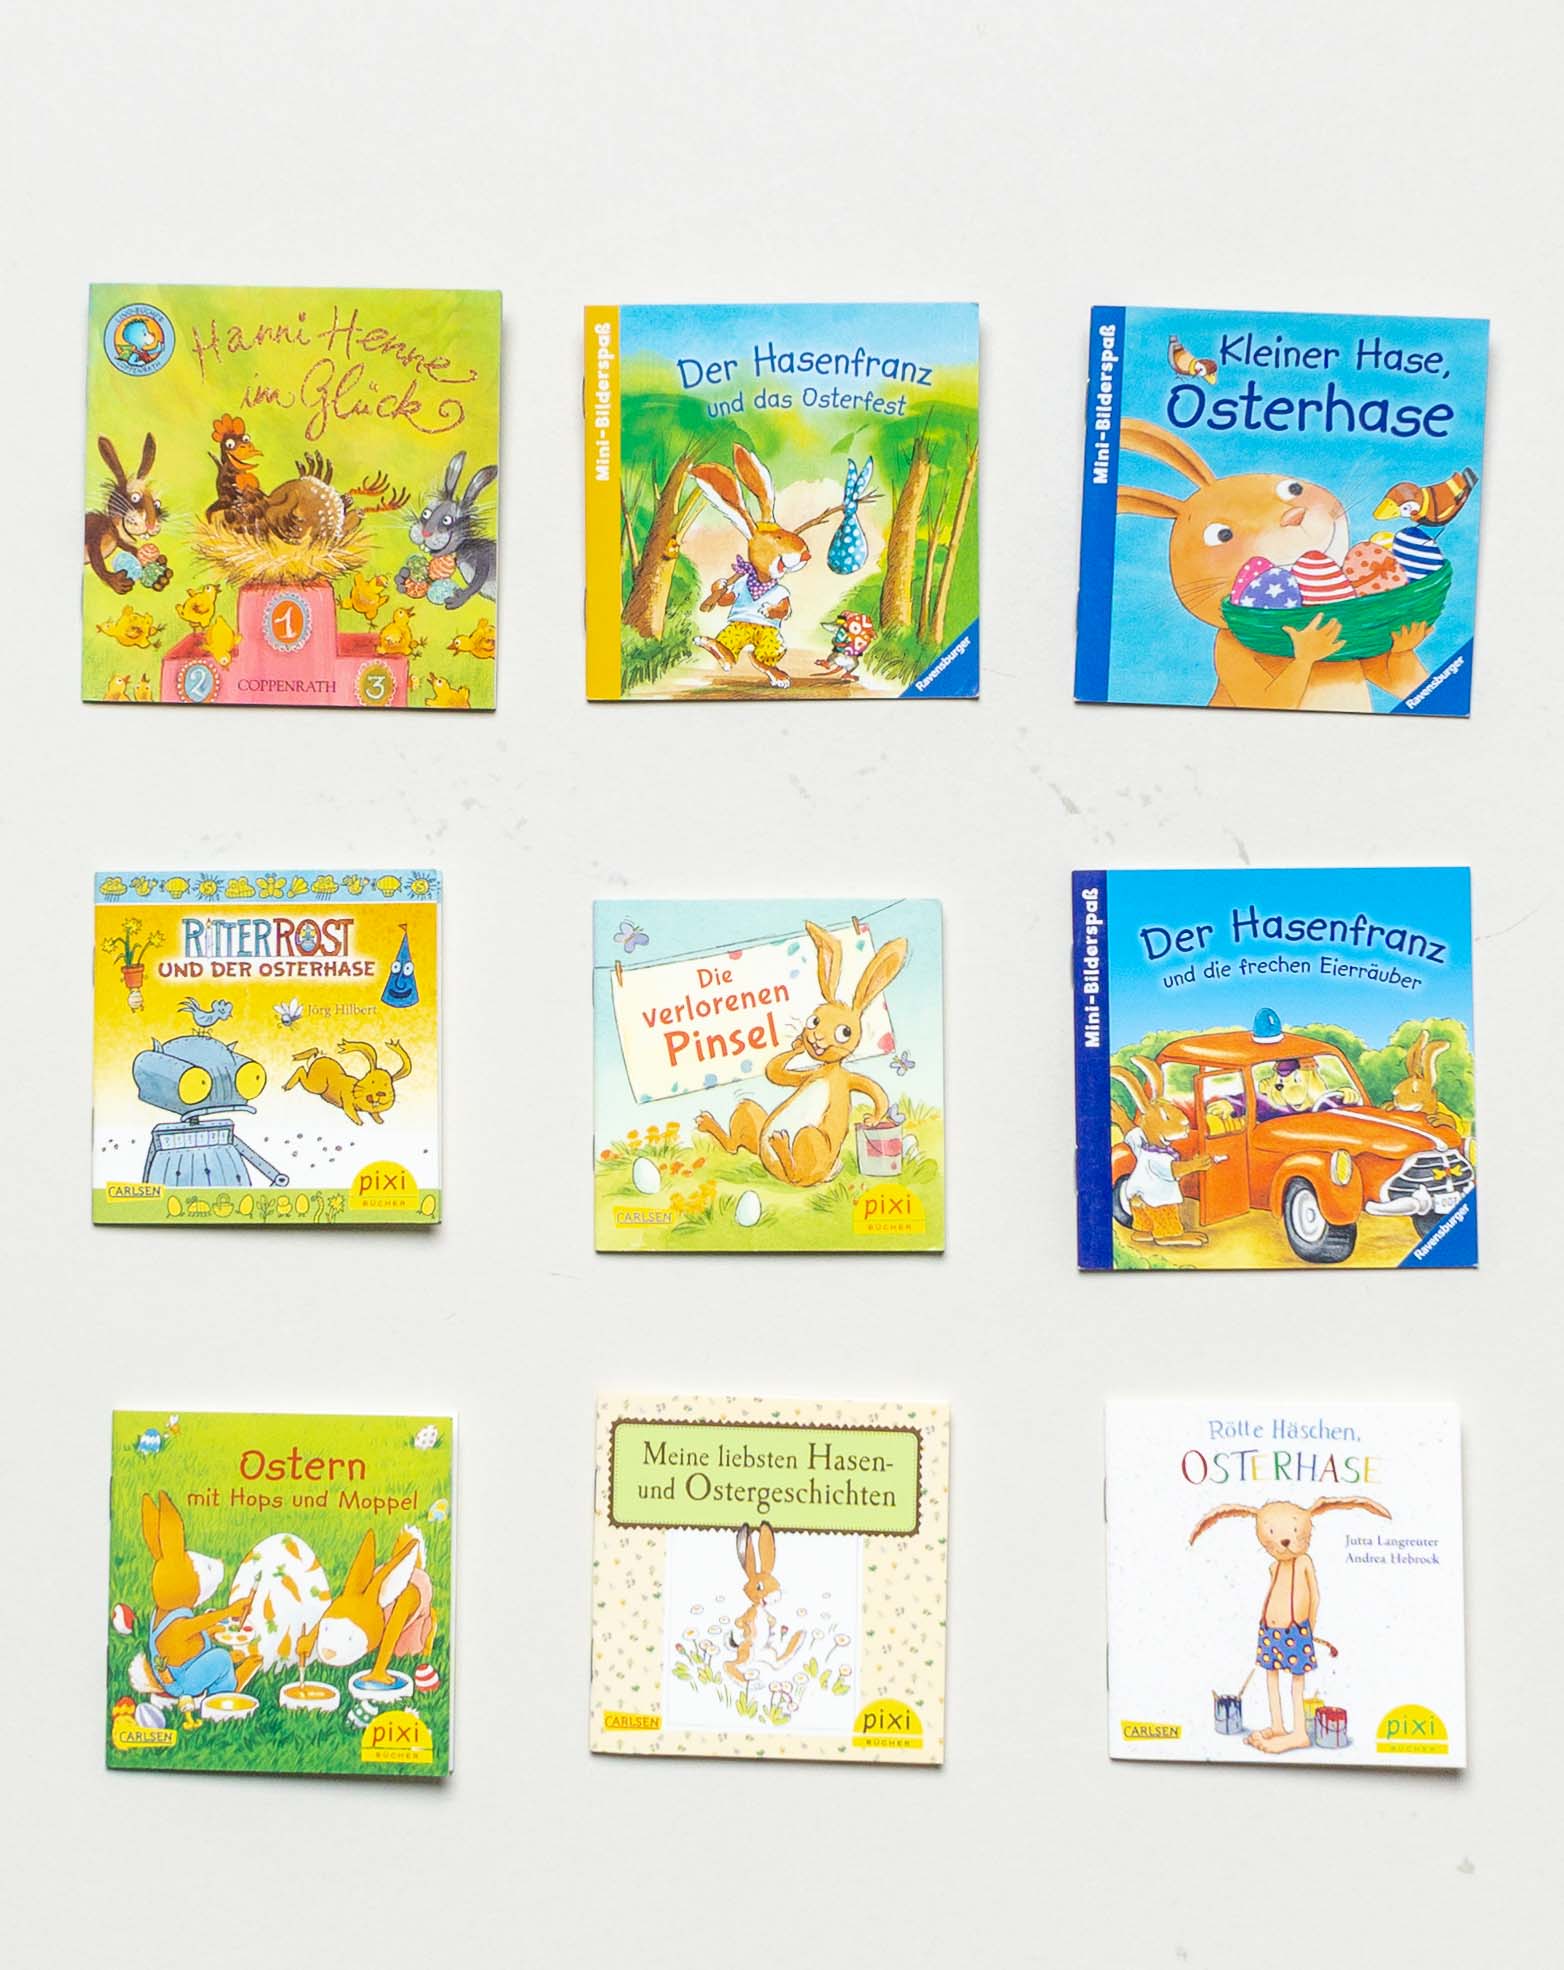 9 Pixi Bücher – Ostern Osterhase Minibücher Set